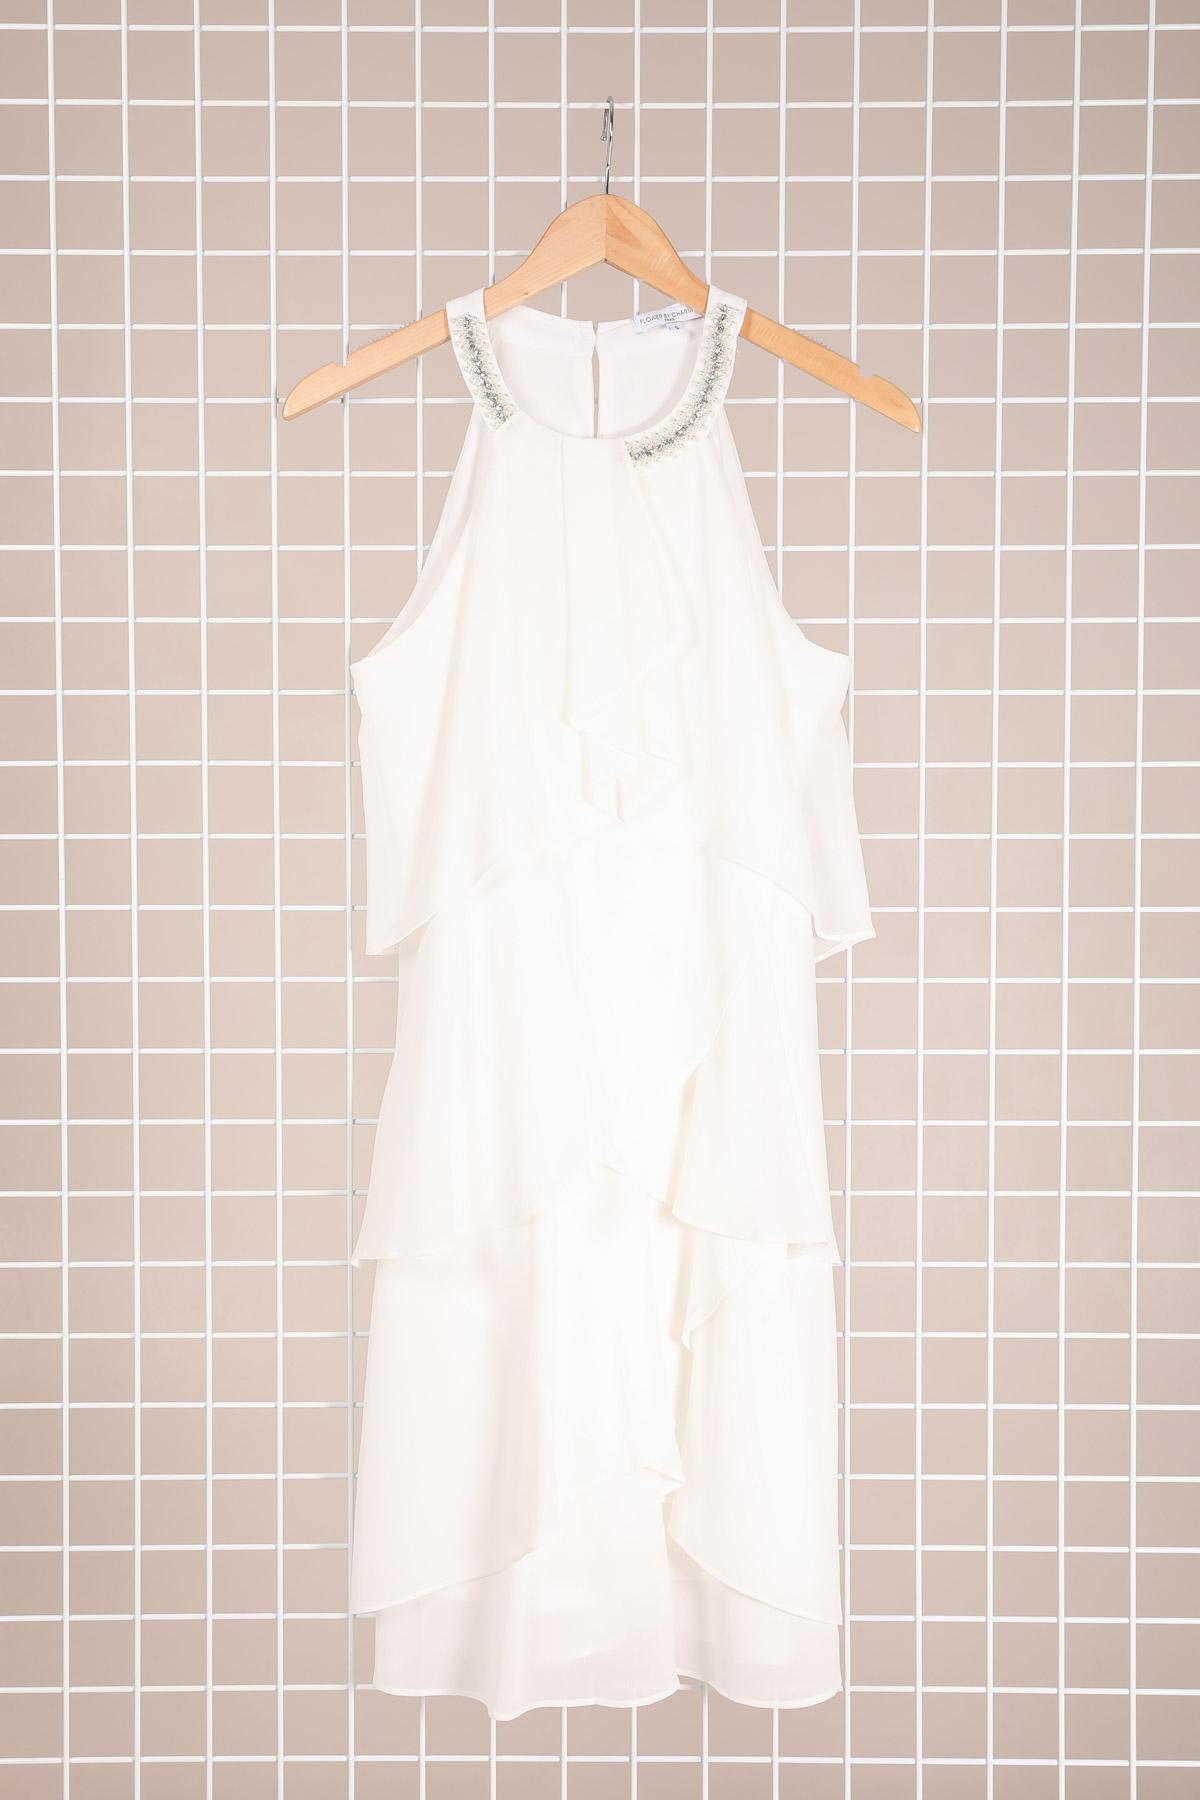 Robes courtes Femme Blanc CHARM'S F8358 #c Efashion Paris